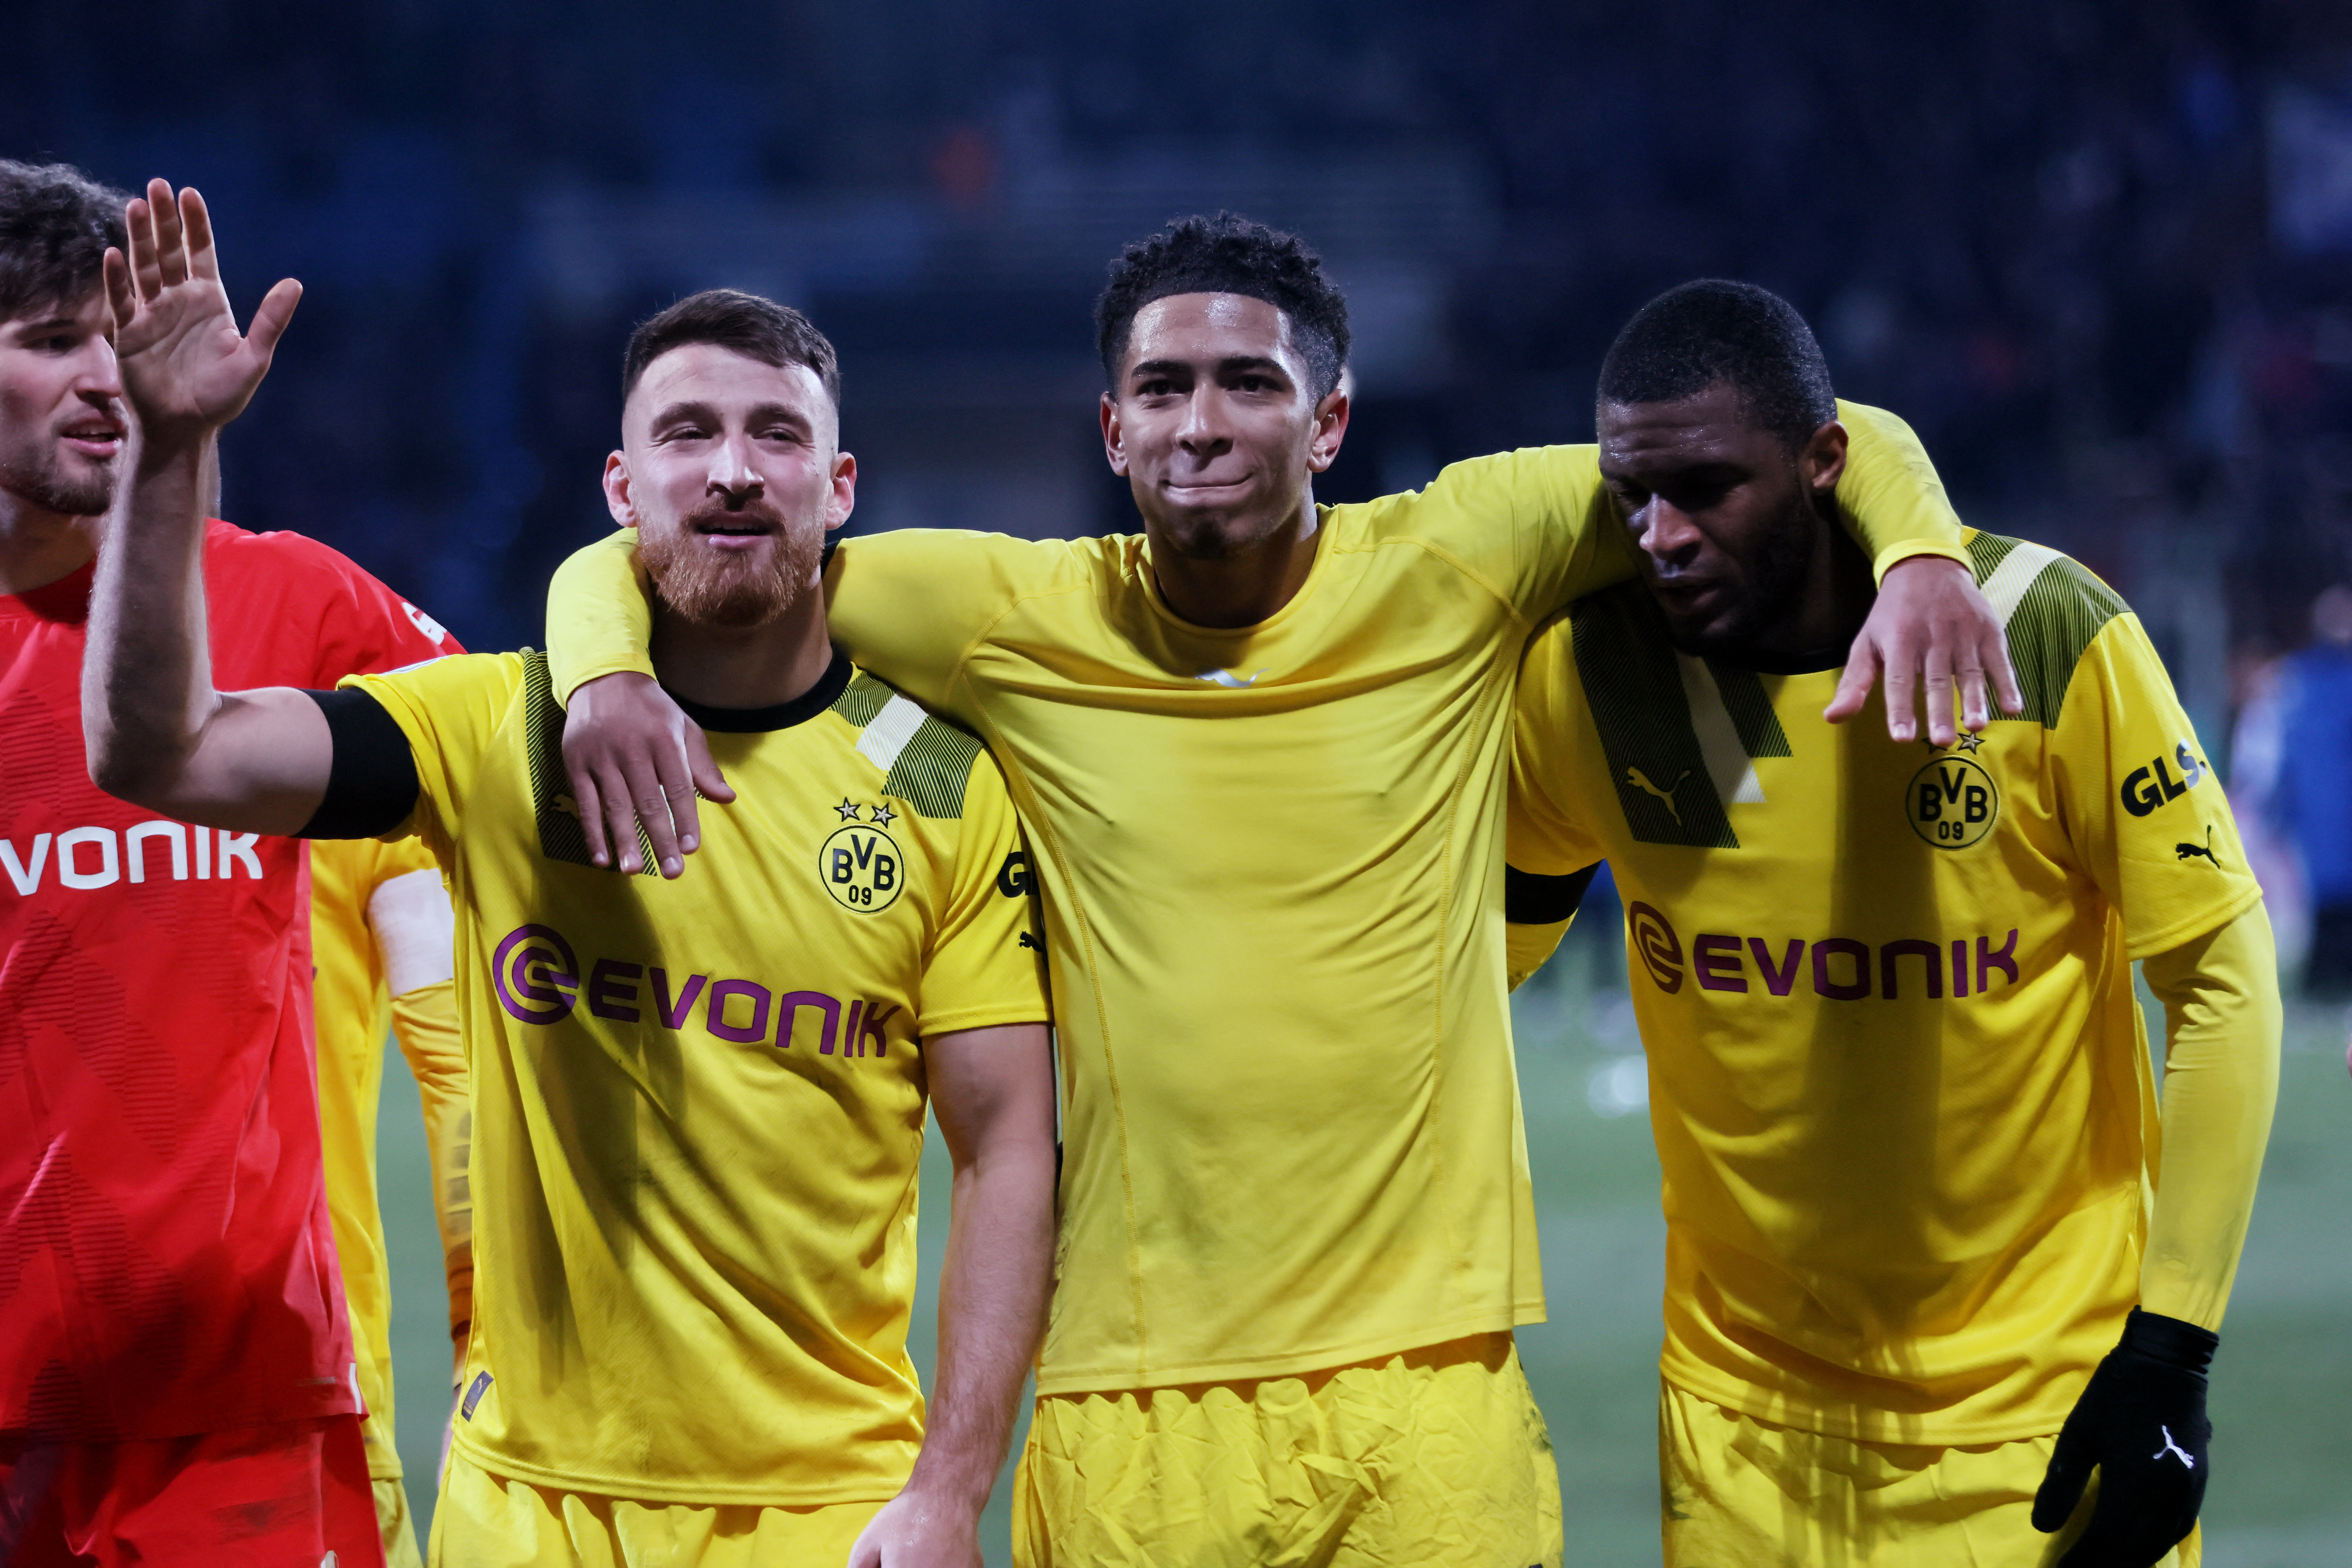 DFB Cup - Round of 16 - VfL Bochum v Borussia Dortmund